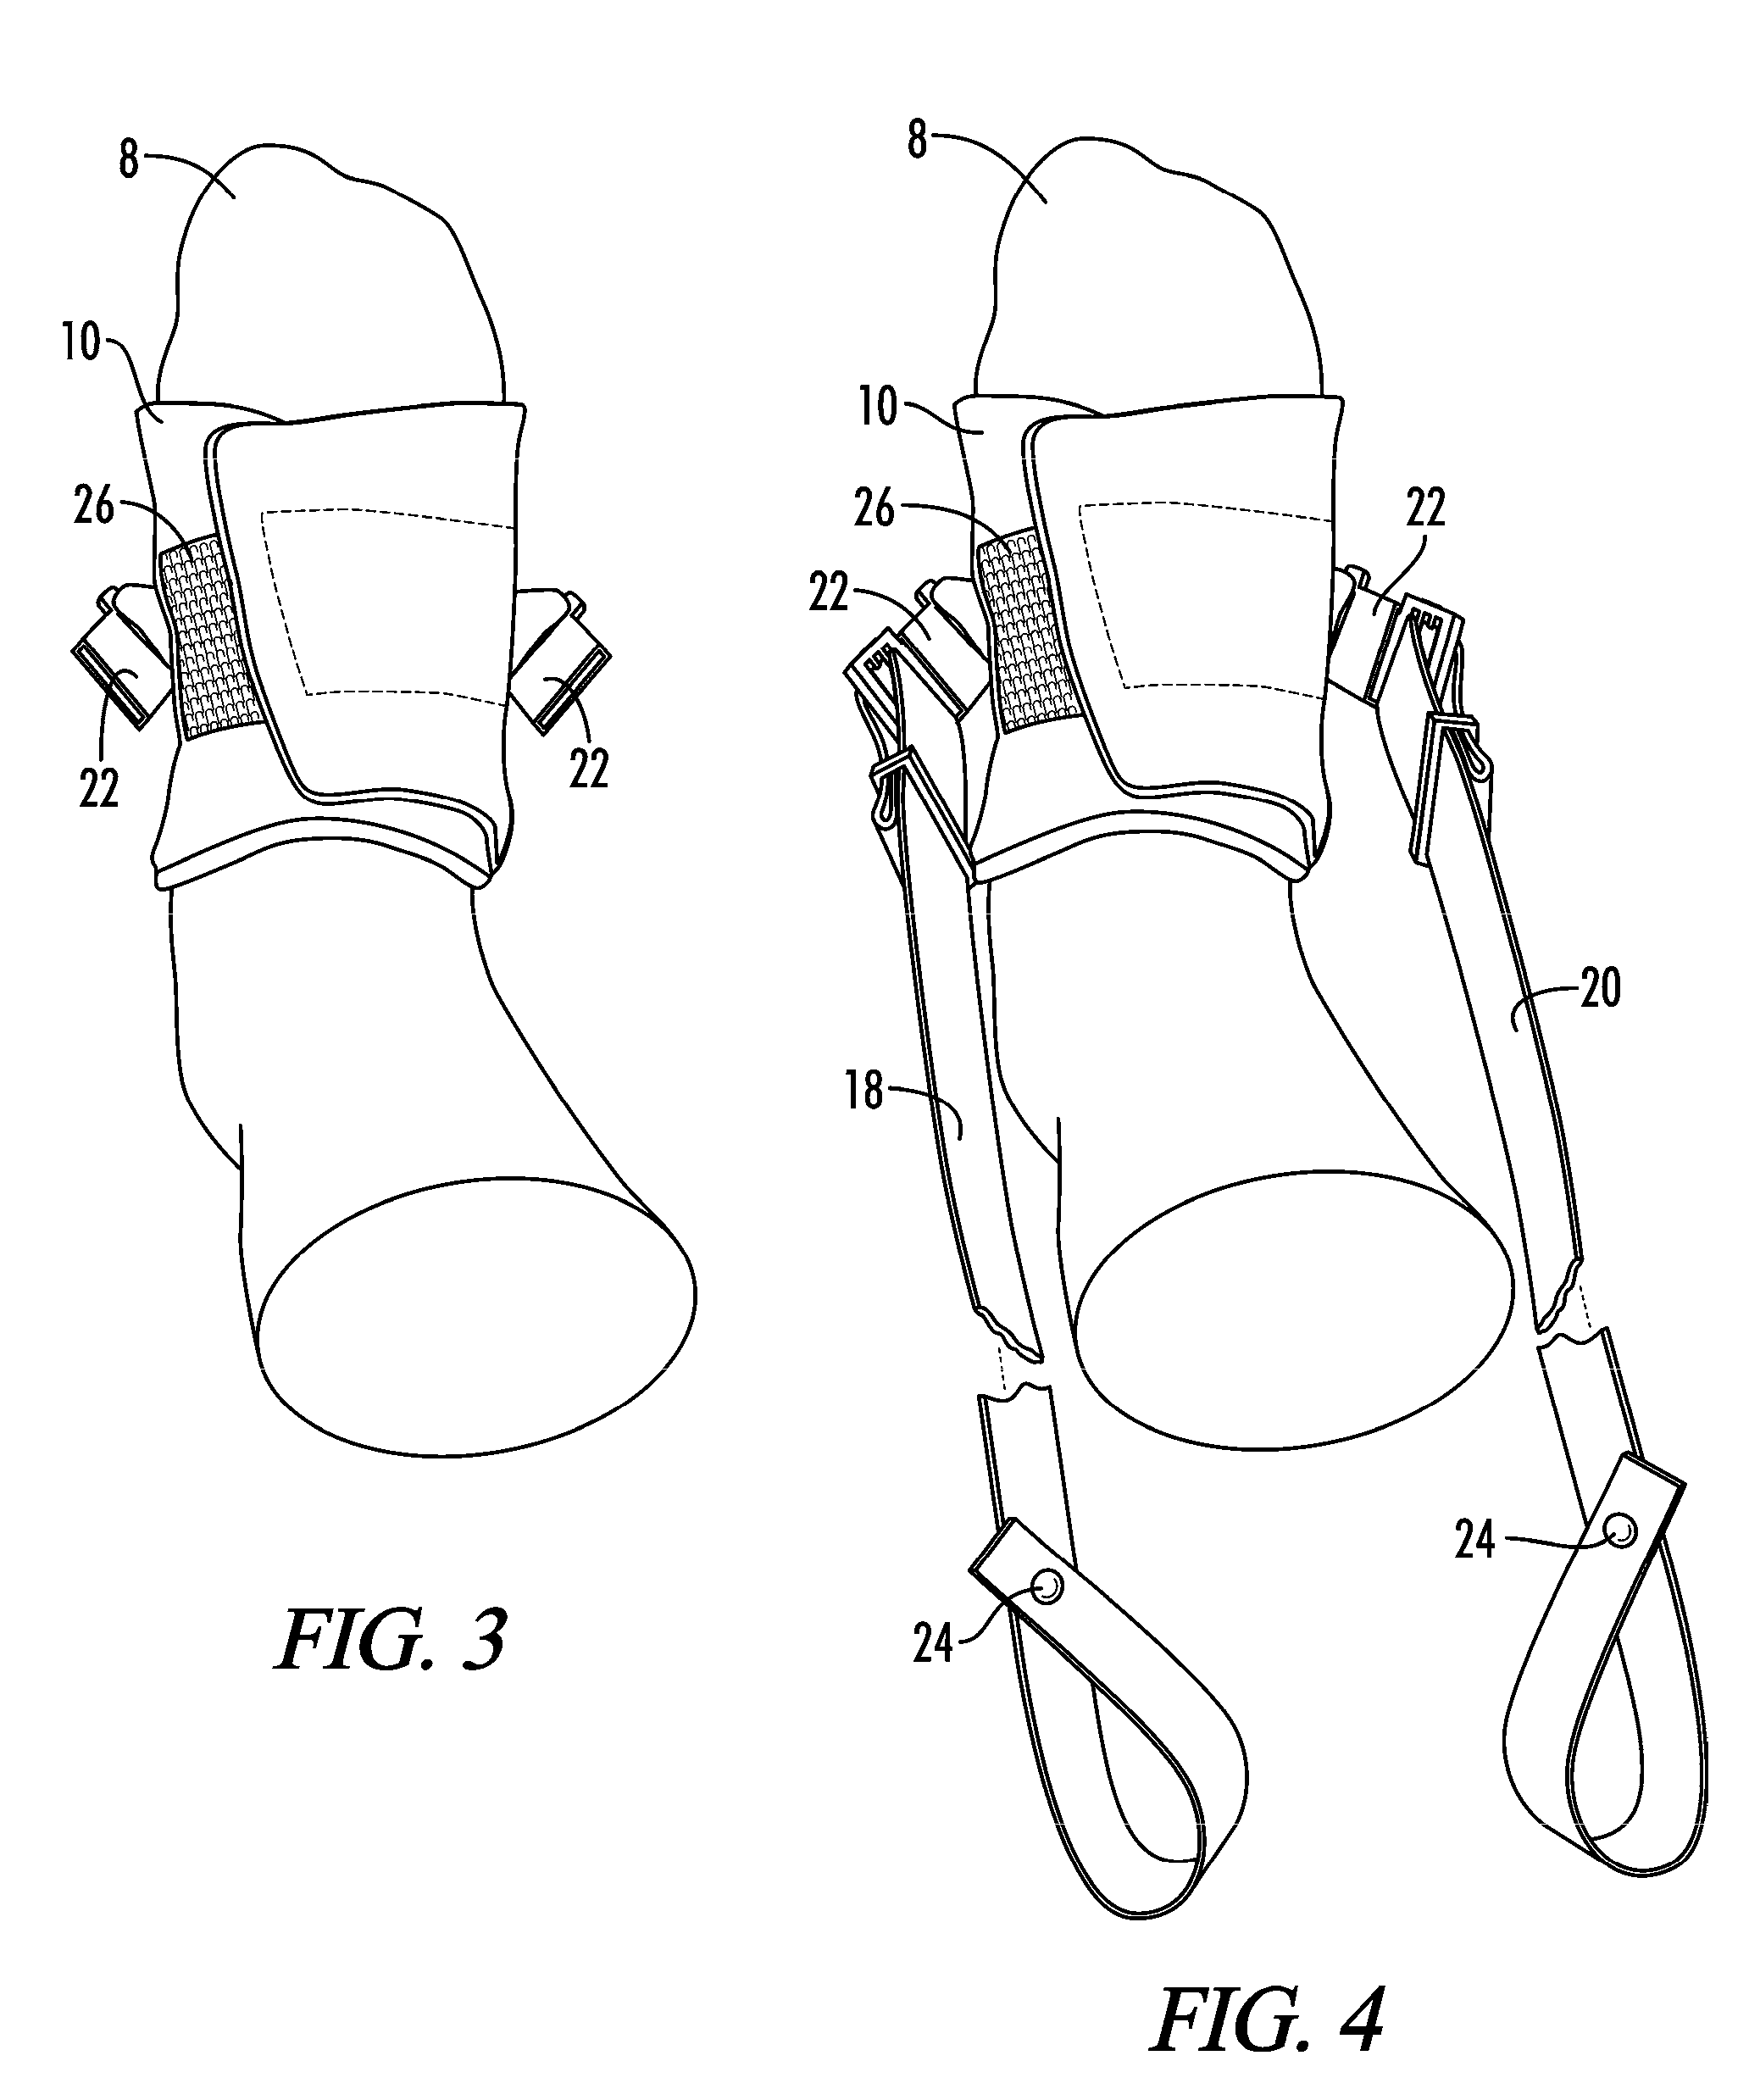 Knee rehabilitation device